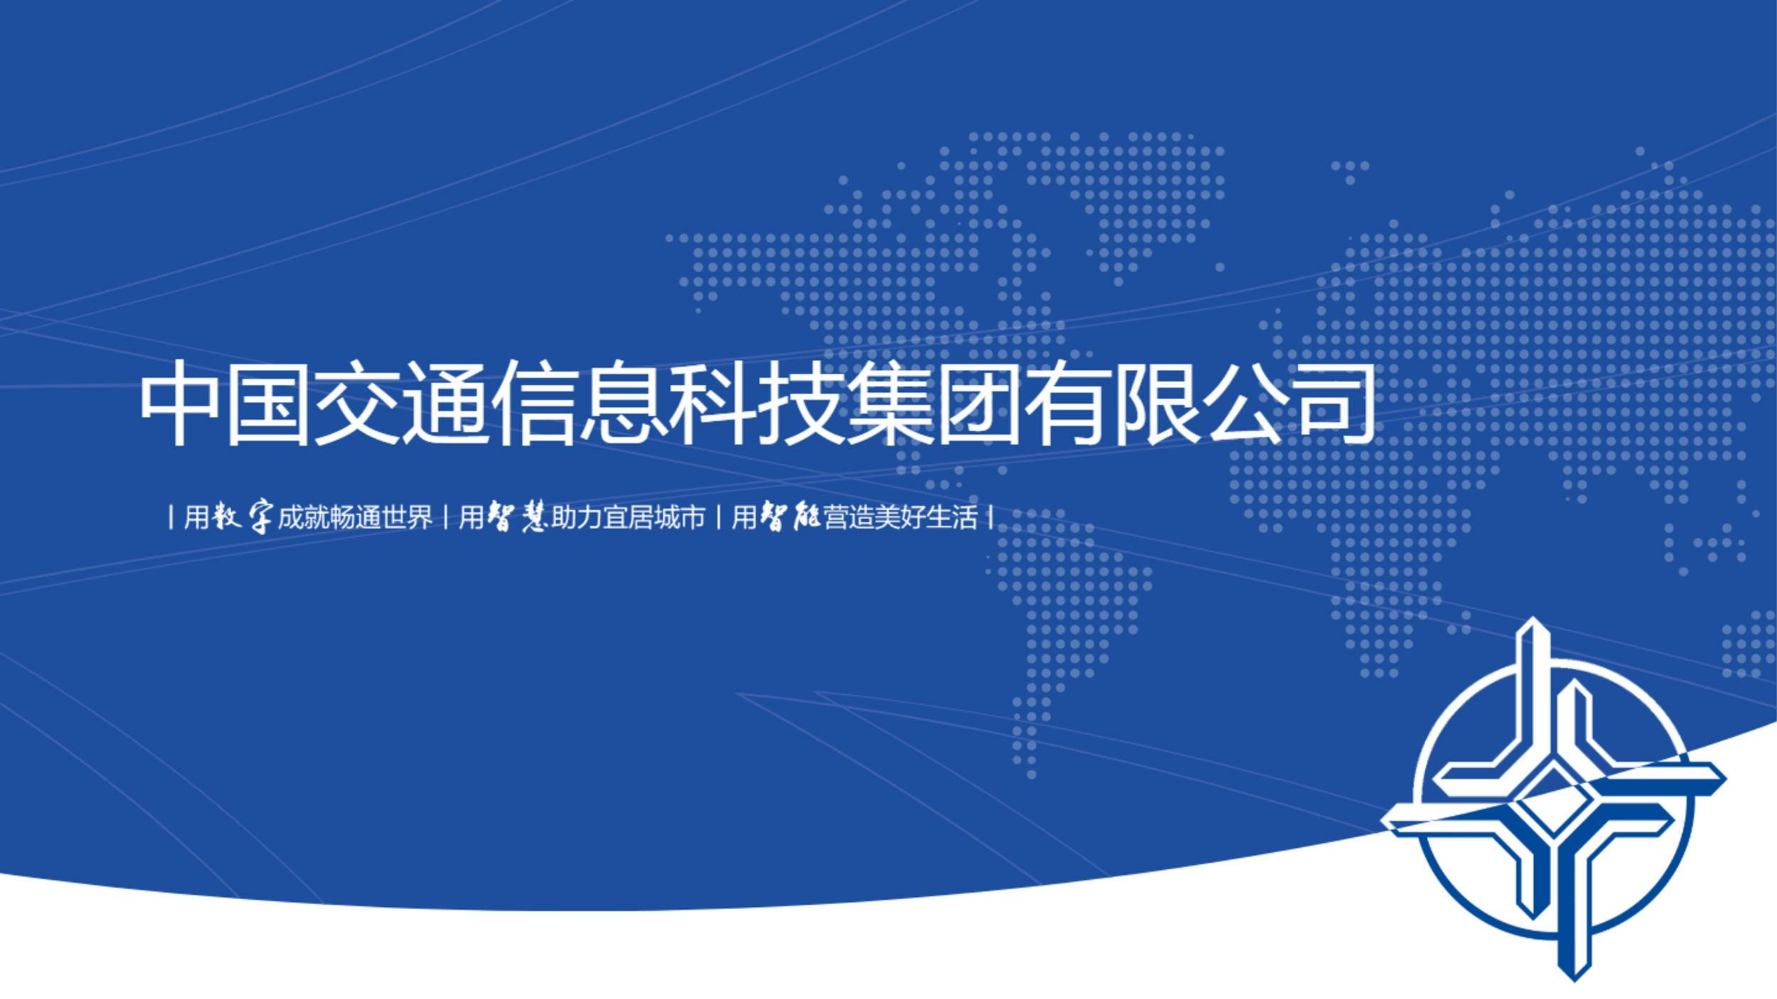 中国交通信息科技集团企业宣传册V10.9版